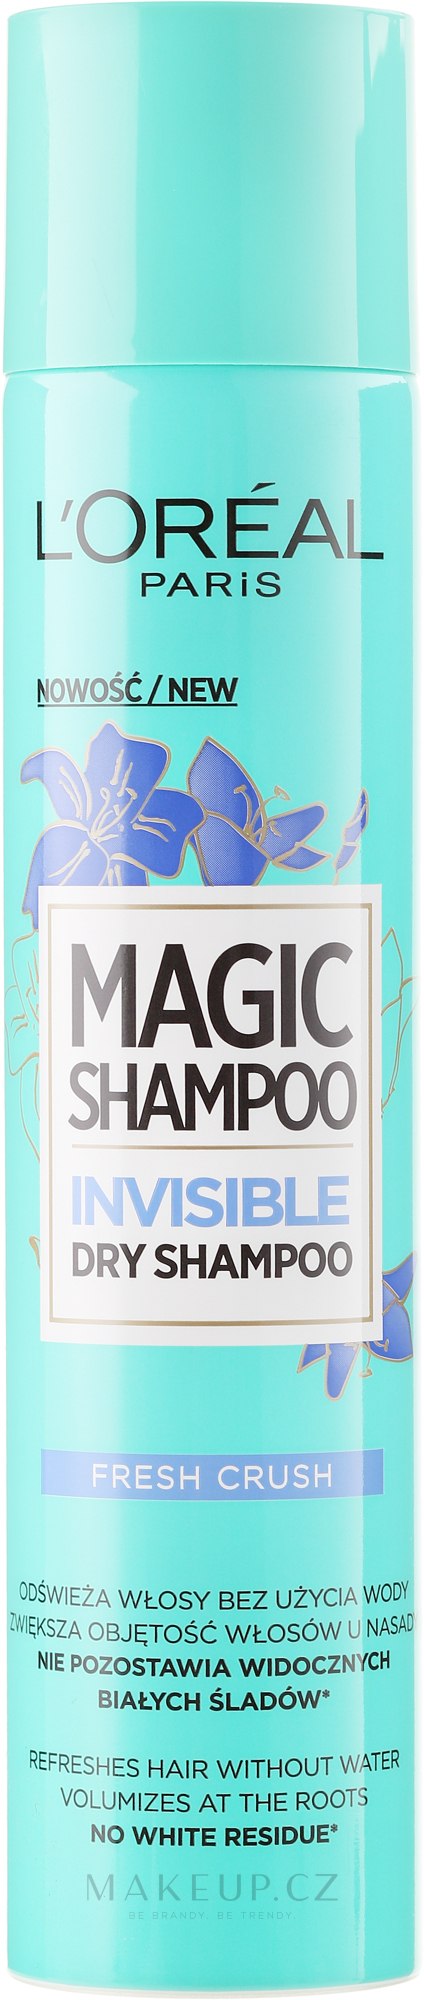 loreal paris niewidzialny szampon wizaz